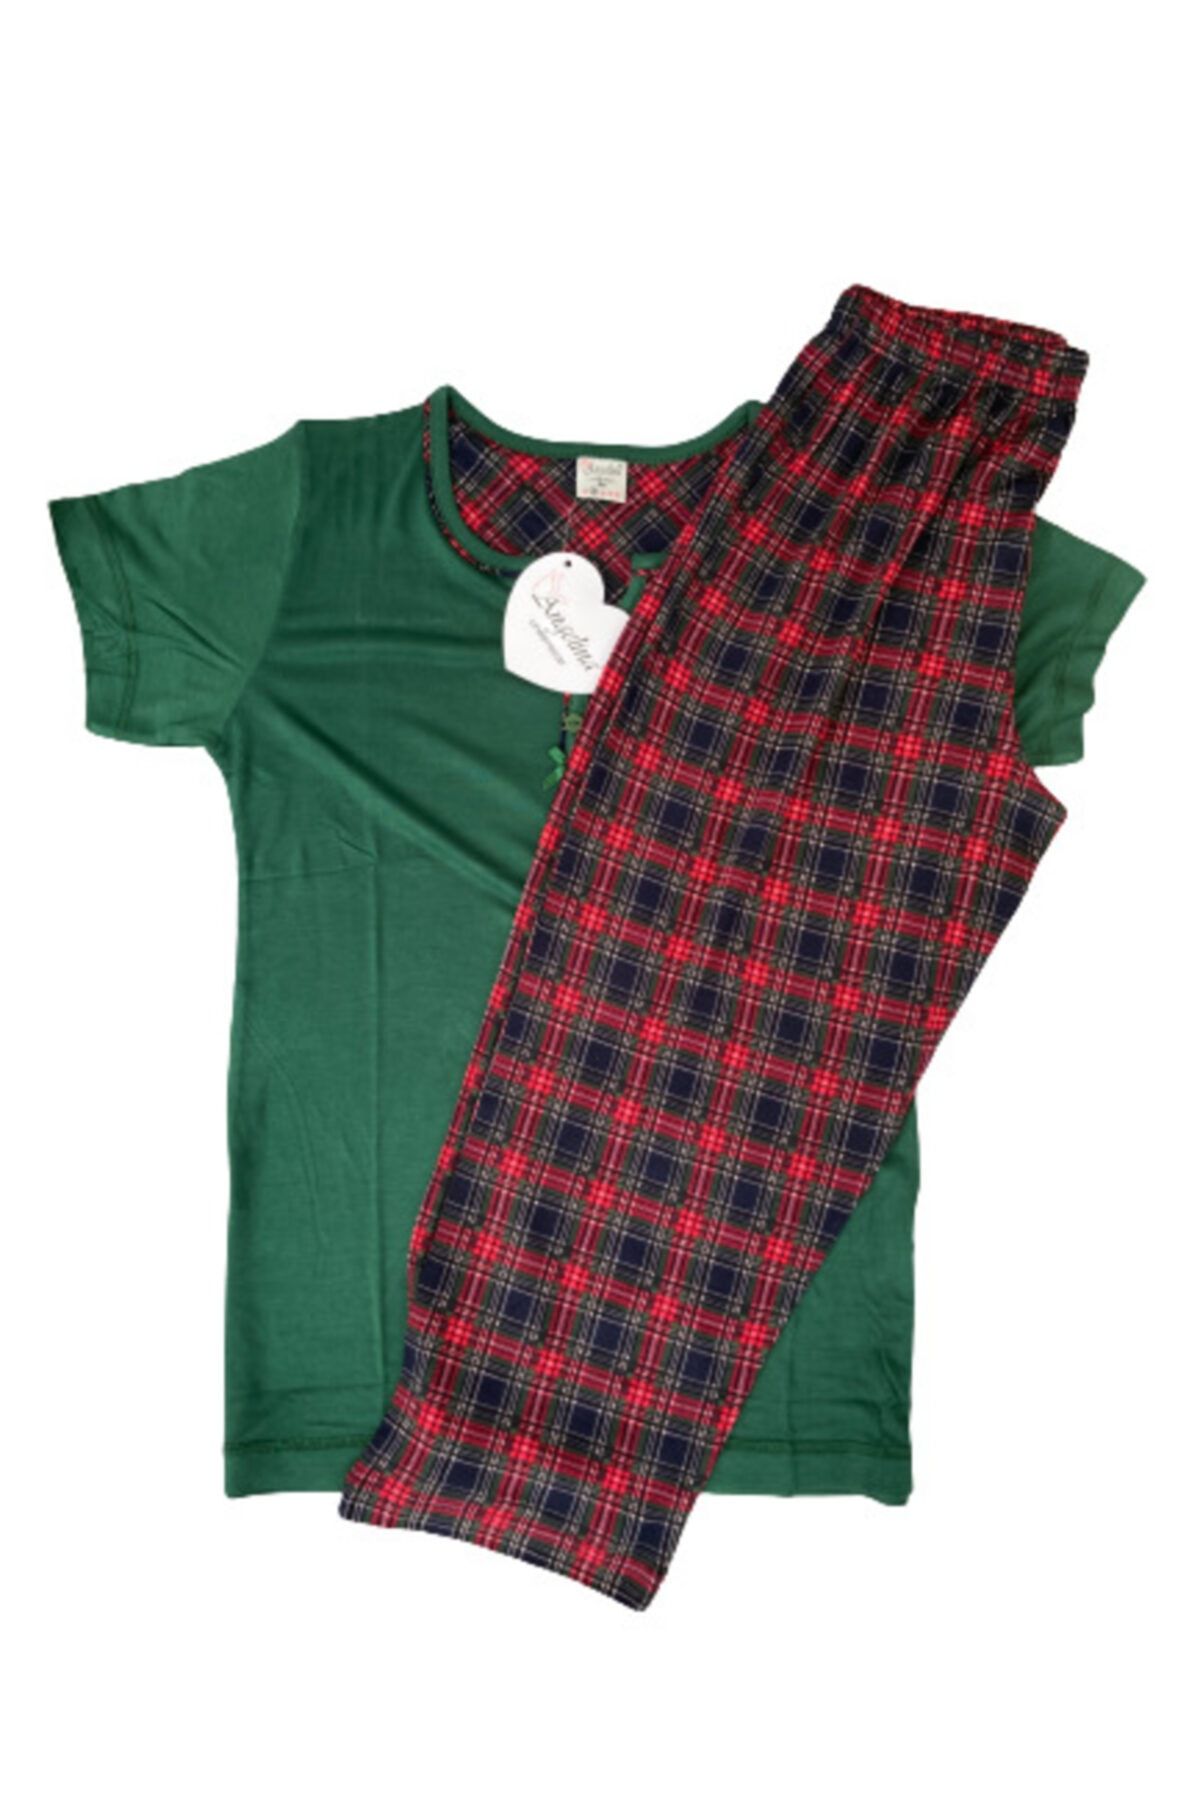 ANGELİNA Kadın Yeşil Kaprili Kısa Kol Bambu Rahat Yazlık Pijama Takımı 3444-0921